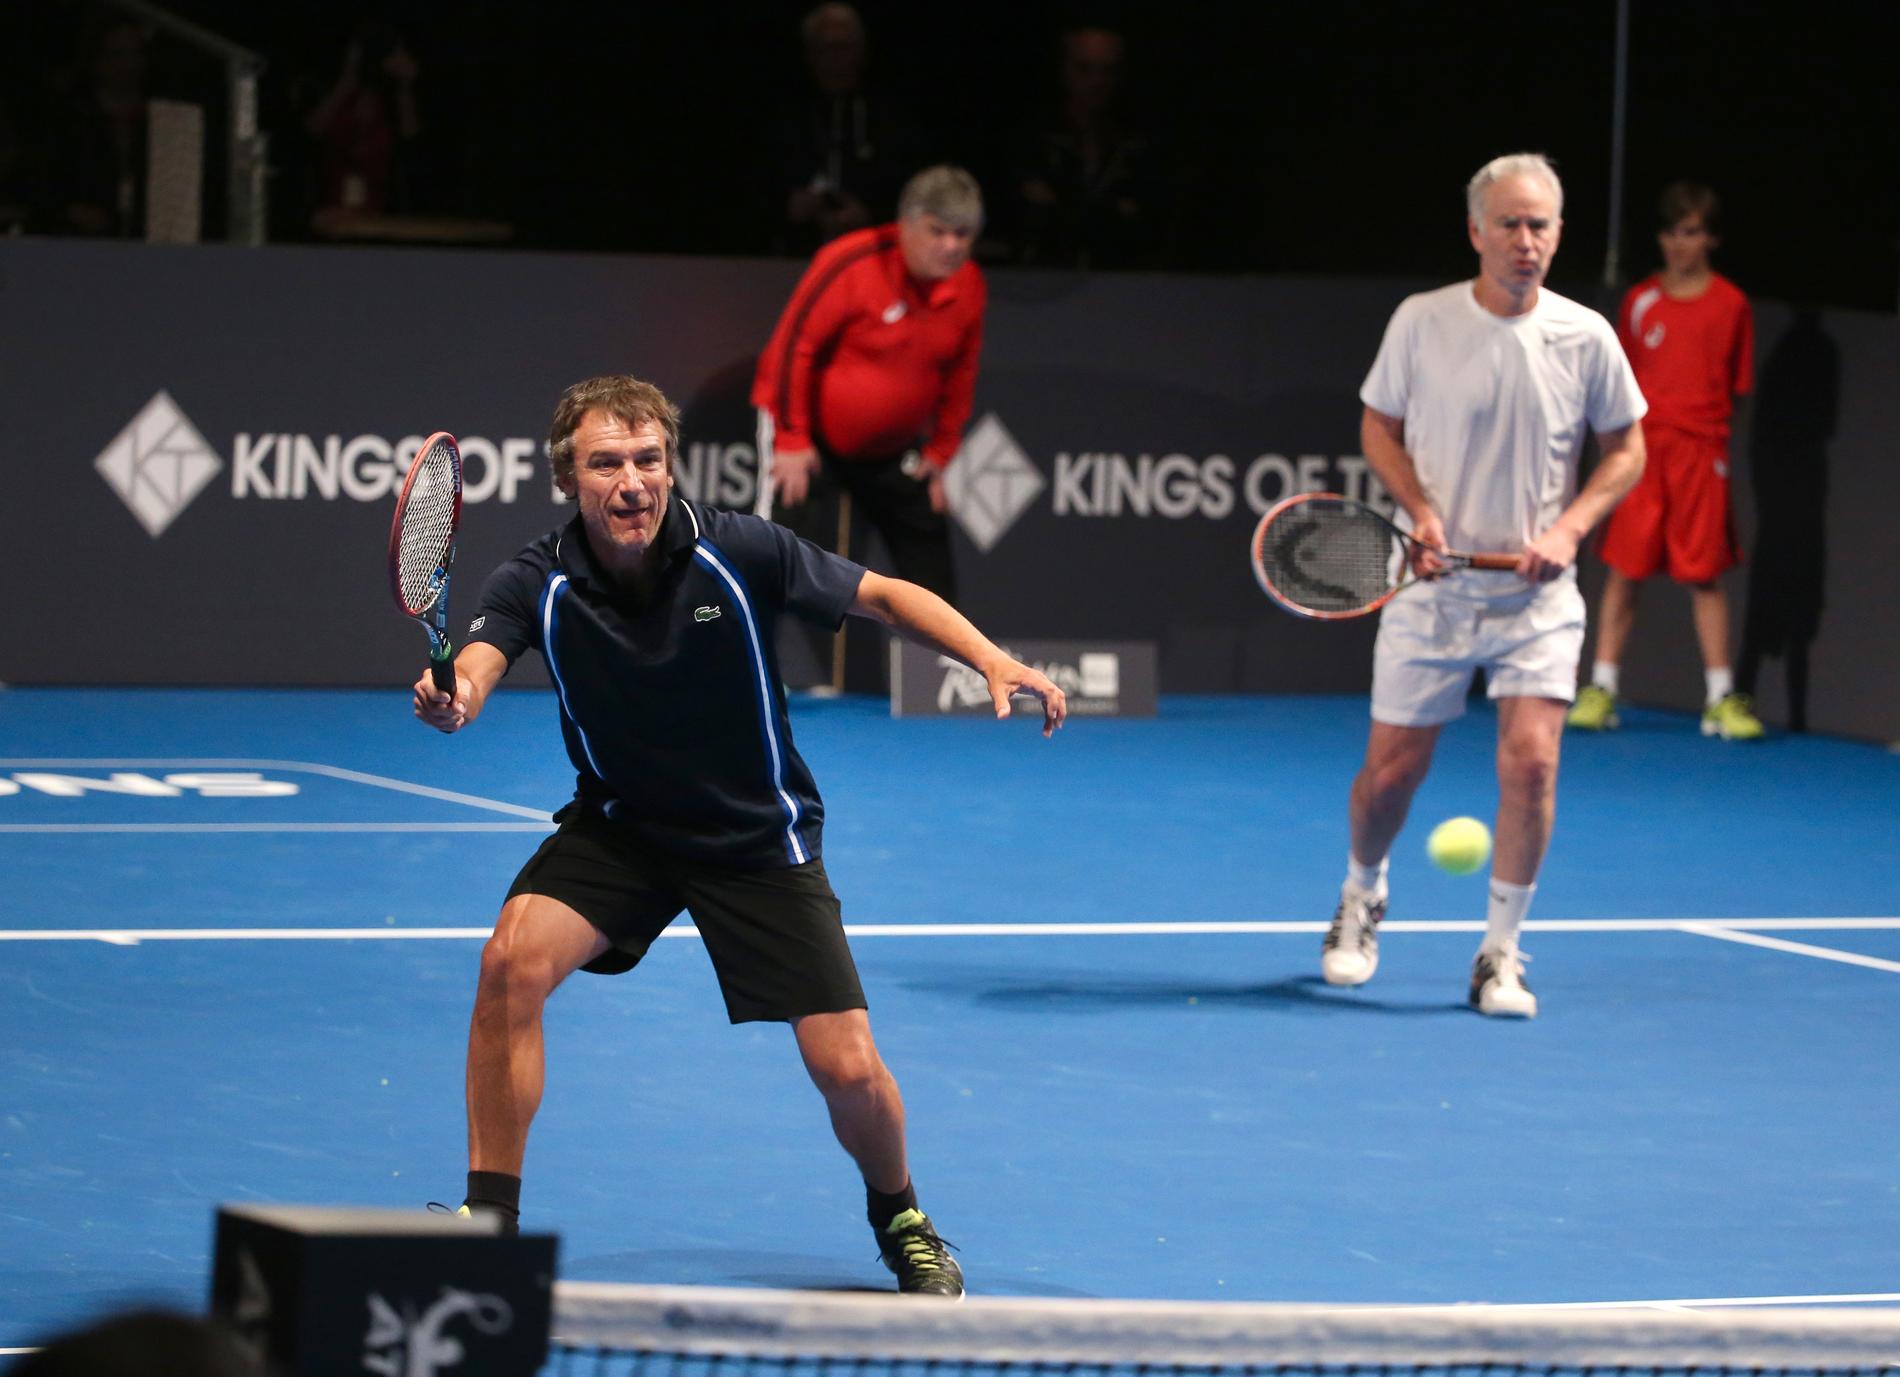 Tenniskungarna Mats Wilander och John McEnroe spelar dubbelmatch  under turneringen Kings of Tennis 2016. Arkivbild.